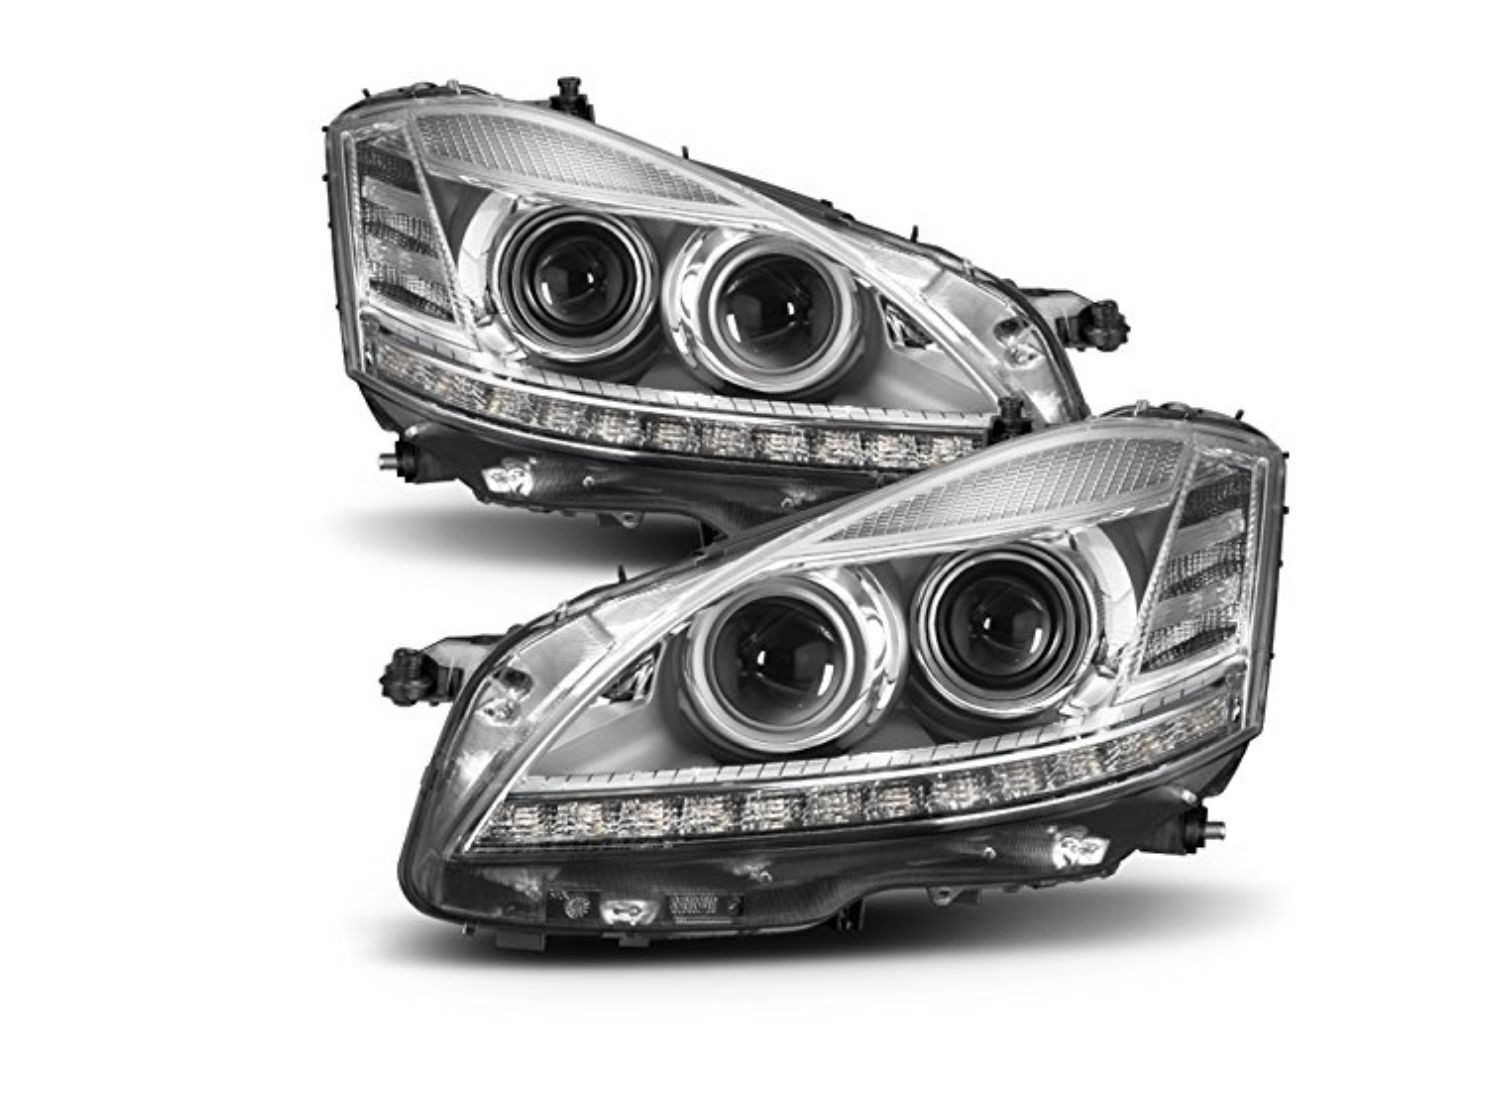 Thay đèn pha ô tô Mercedes S400 theo khuyến cáo của nhà sản xuất